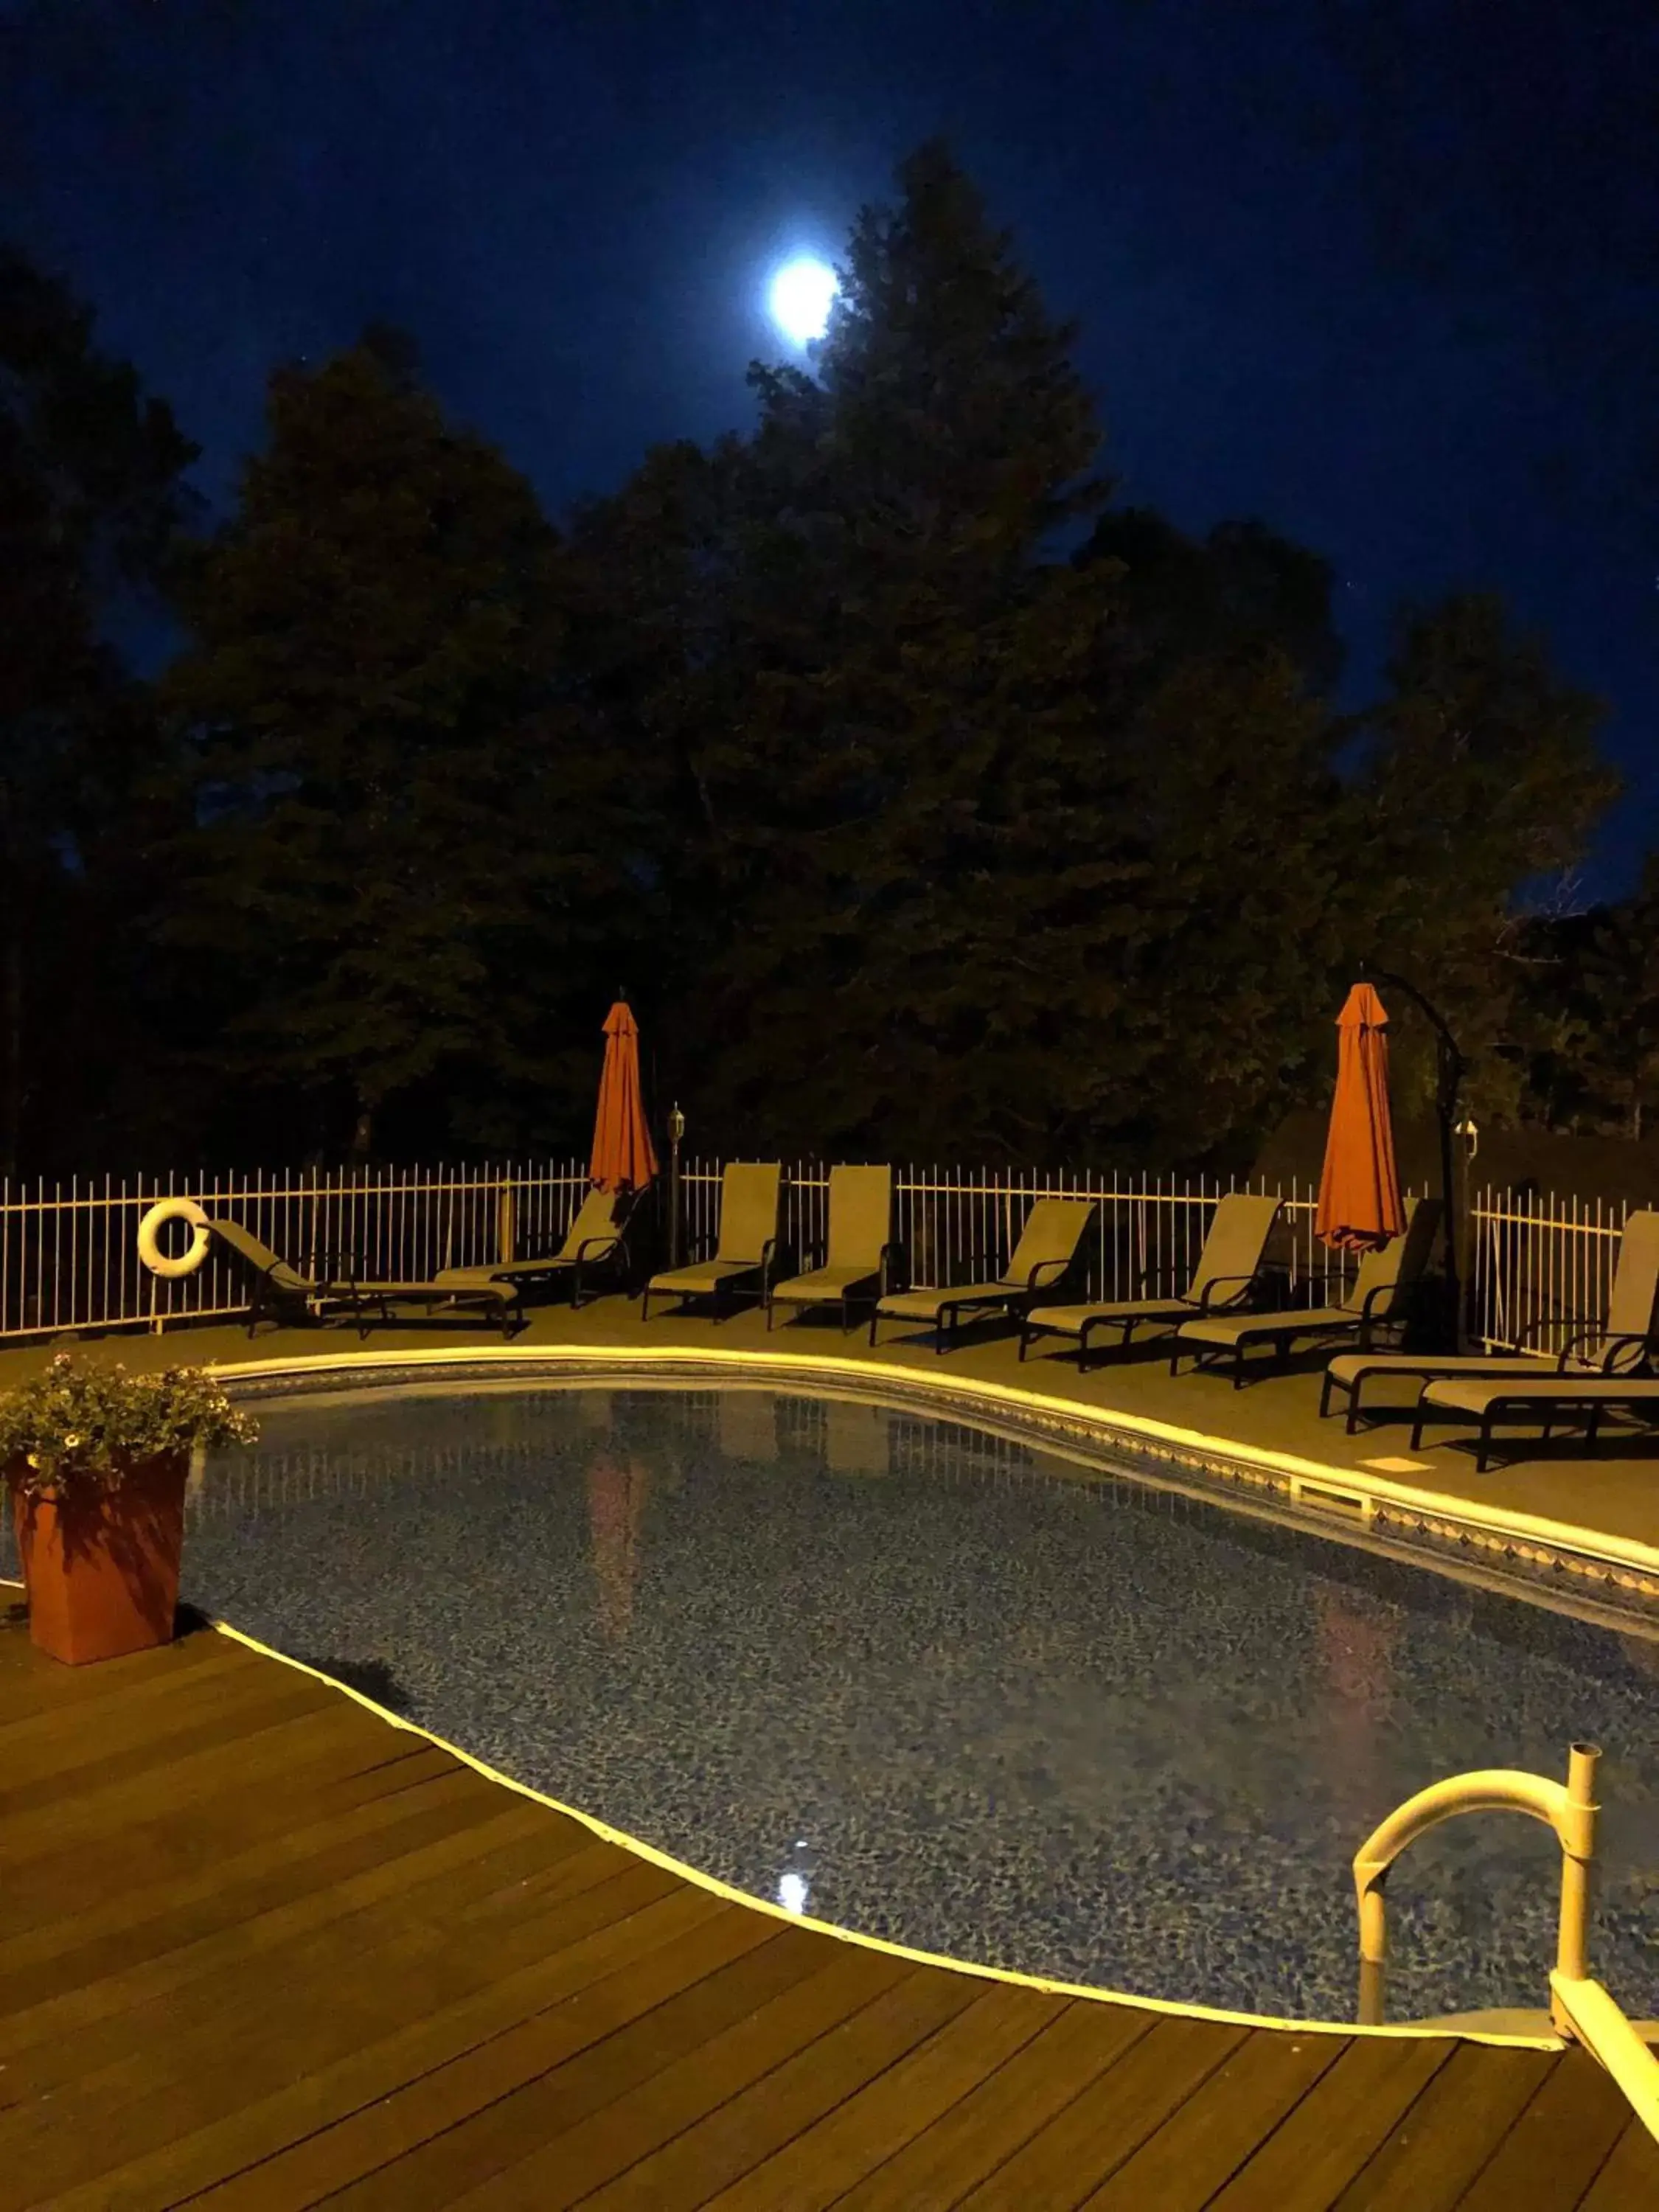 Swimming Pool in Auberge Hotel Spa Watel